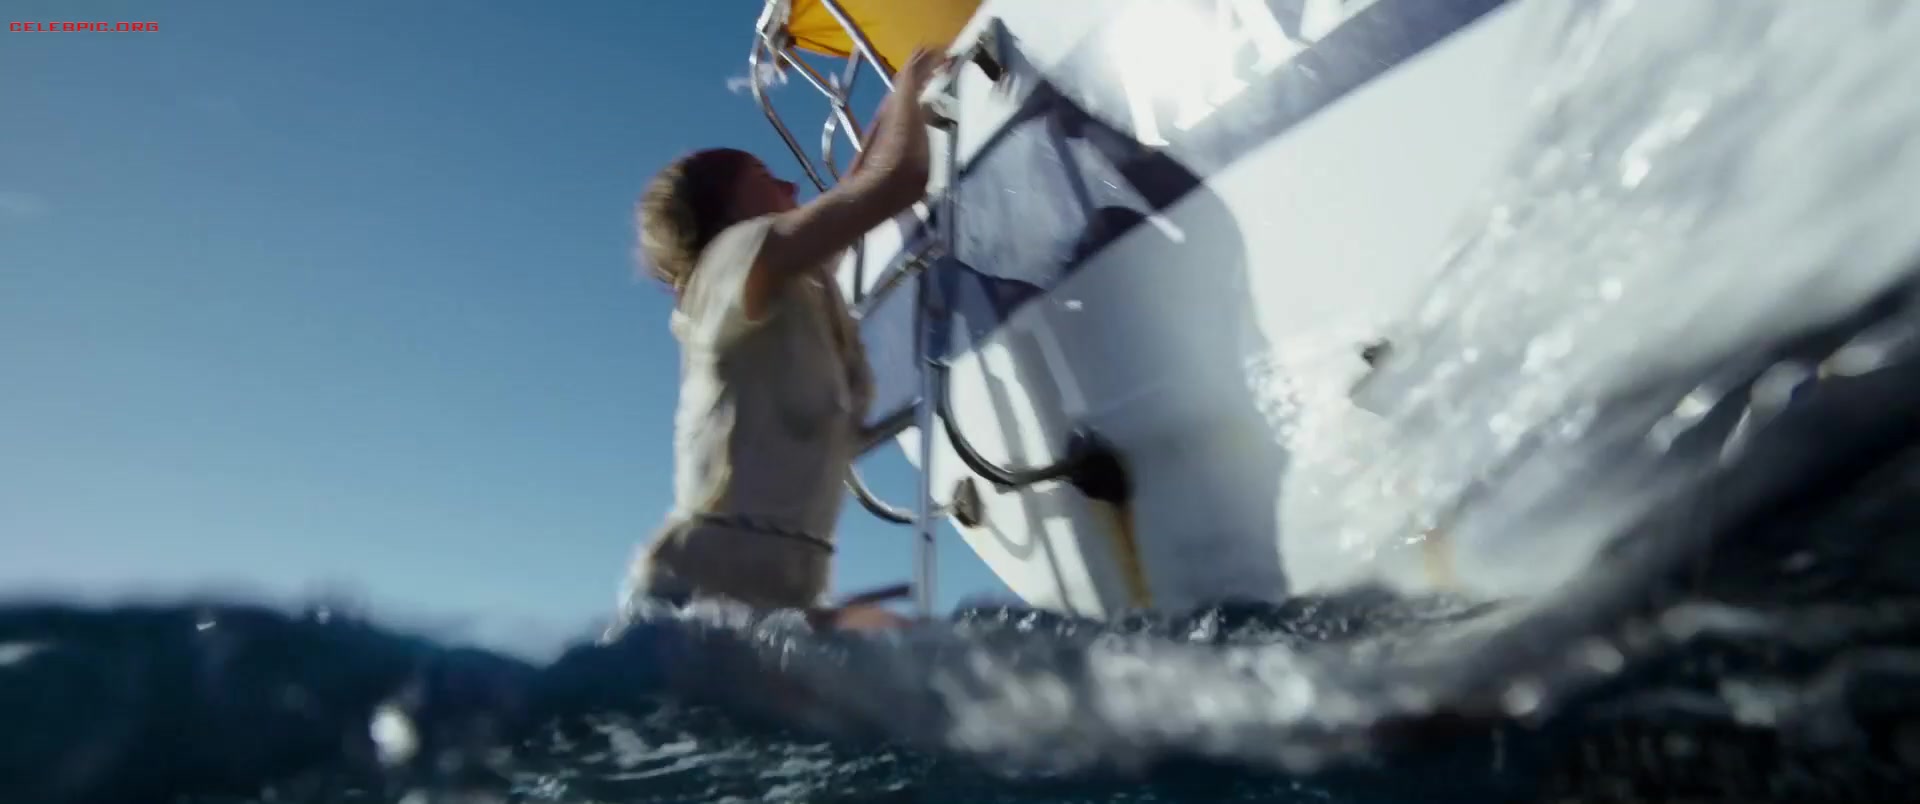 Shailene Woodley - Adrift 1080p (1) 0879.jpg